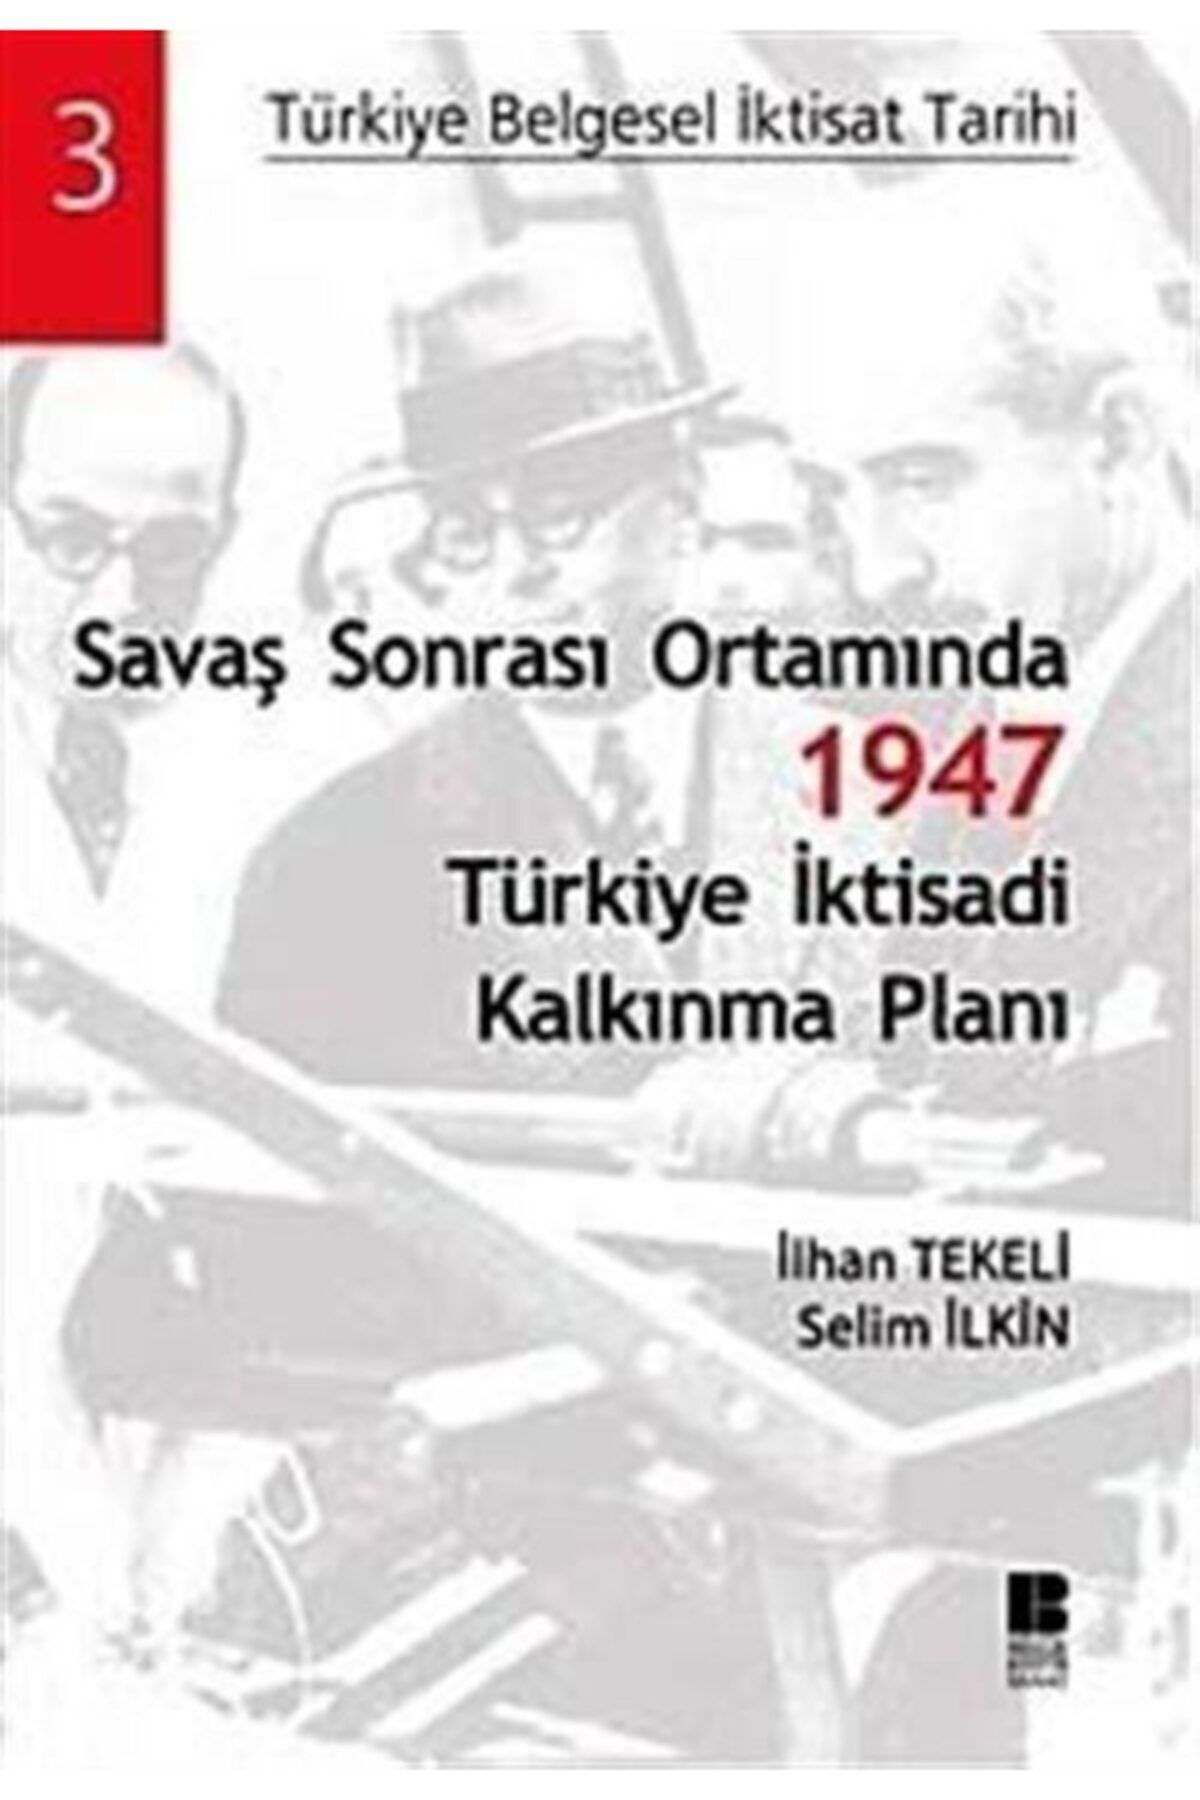 Bilge Kültür Sanat Savaş Sonrası Ortamında 1947 Türkiye Iktisadi Kalkınma Planı